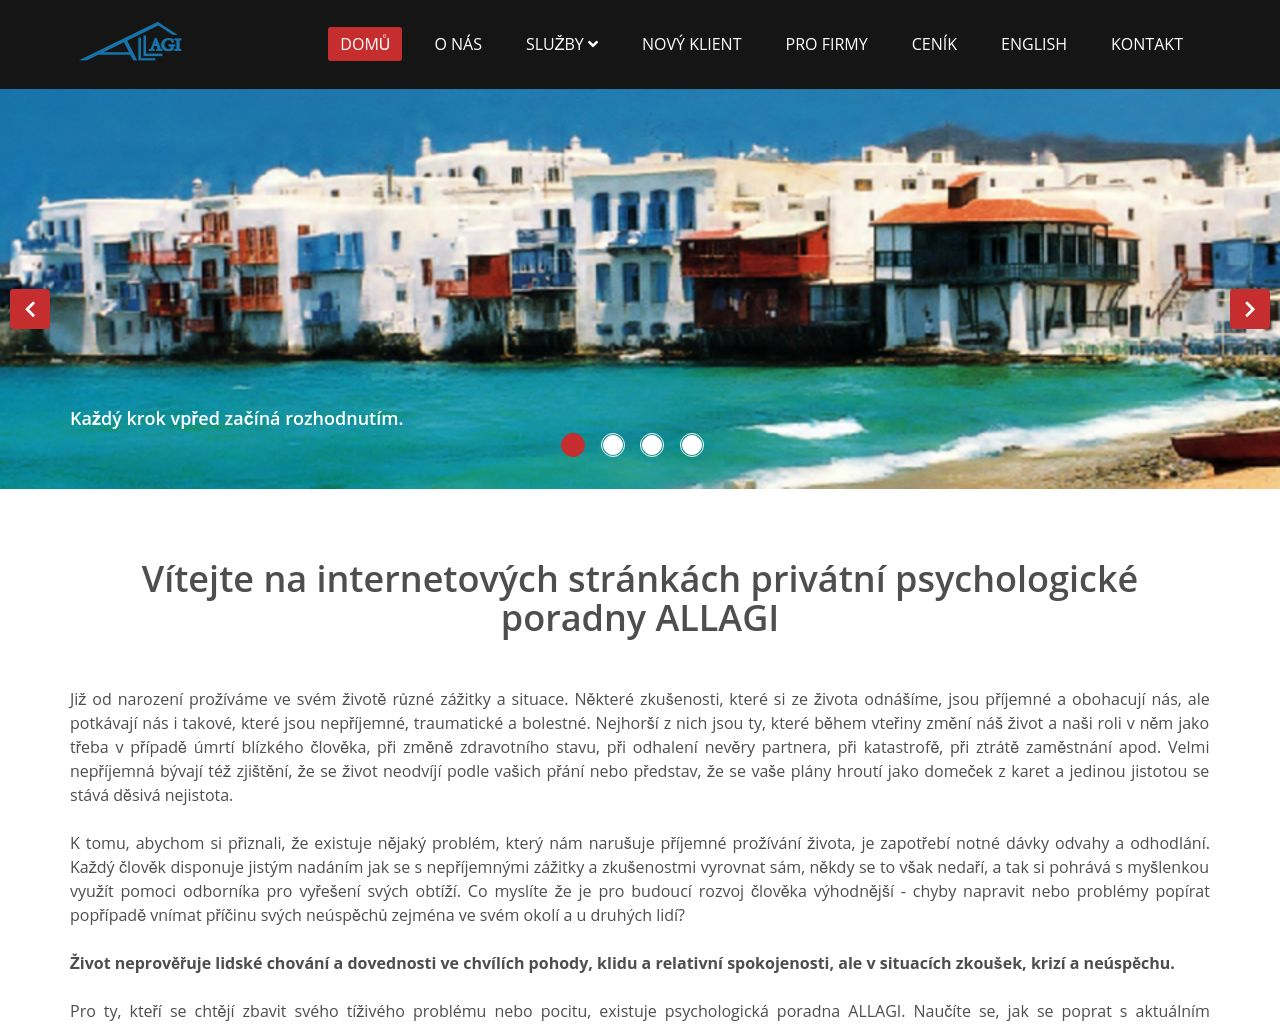 Site Image allagi.cz v 1280x1024